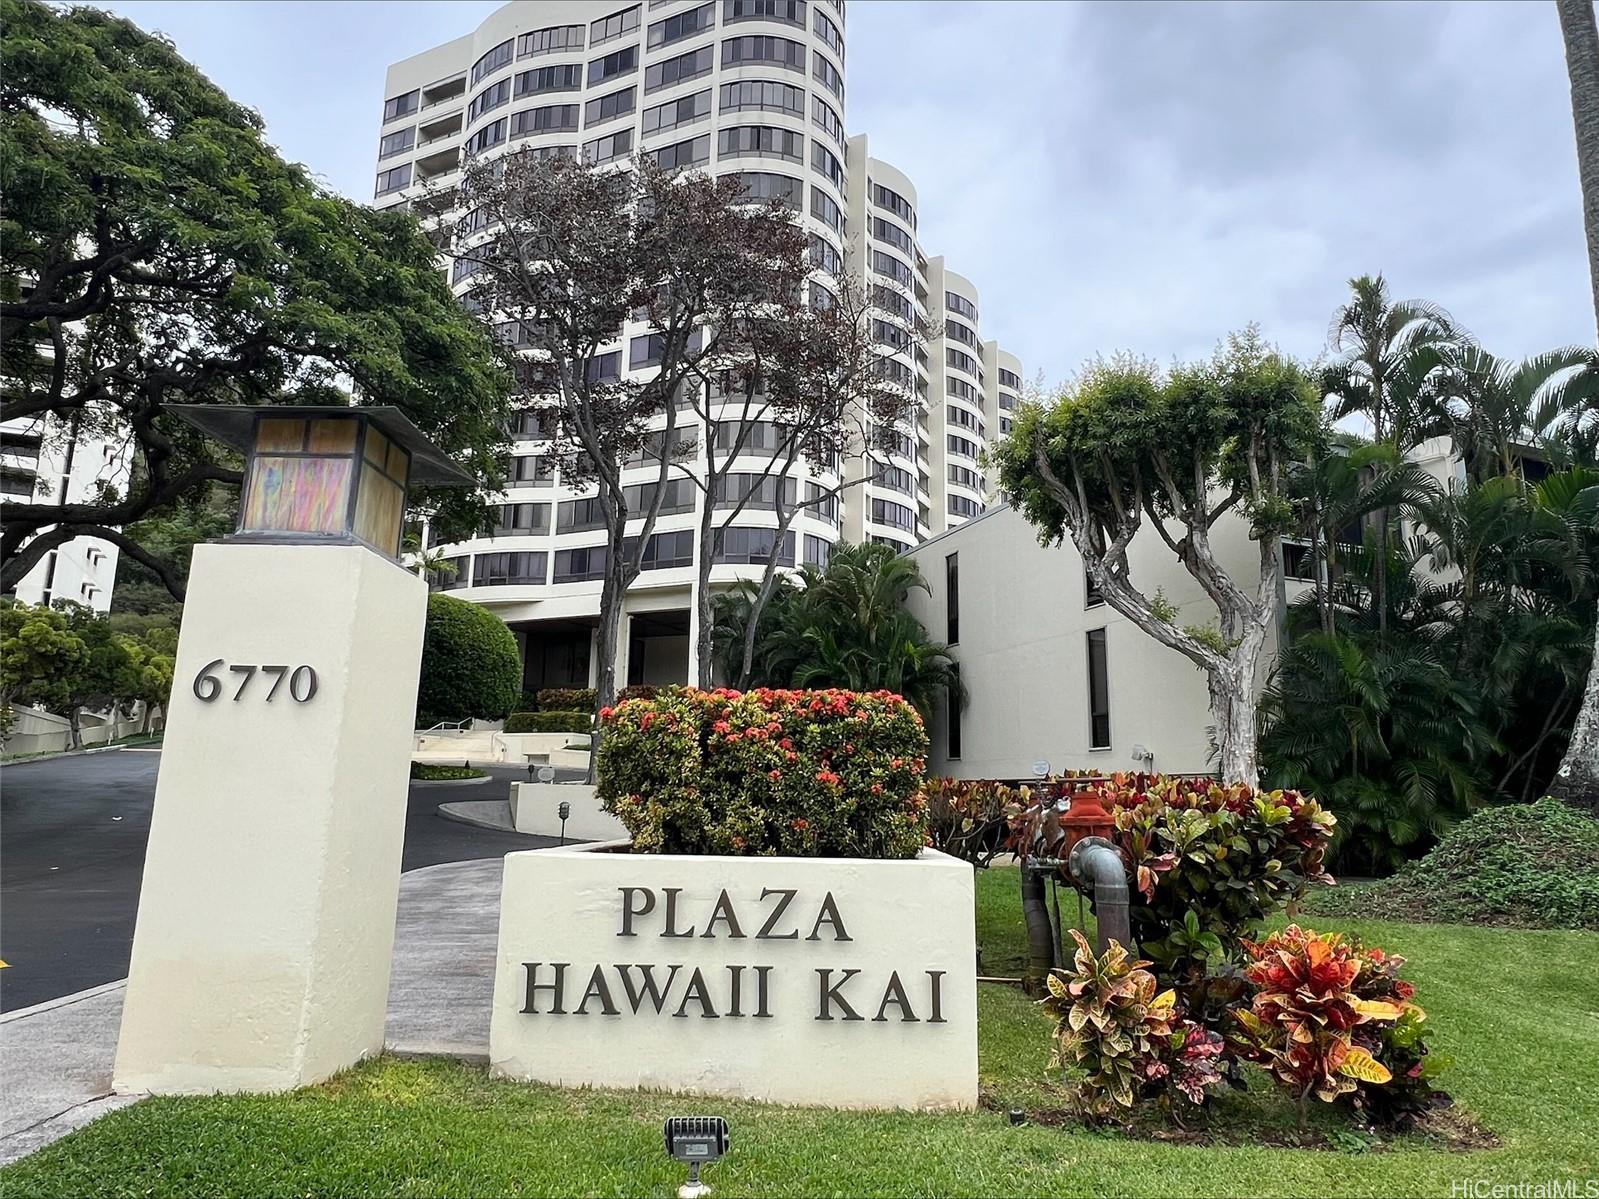 Plaza Hawaii Kai 6770 Hawaii Kai Drive  Unit 3